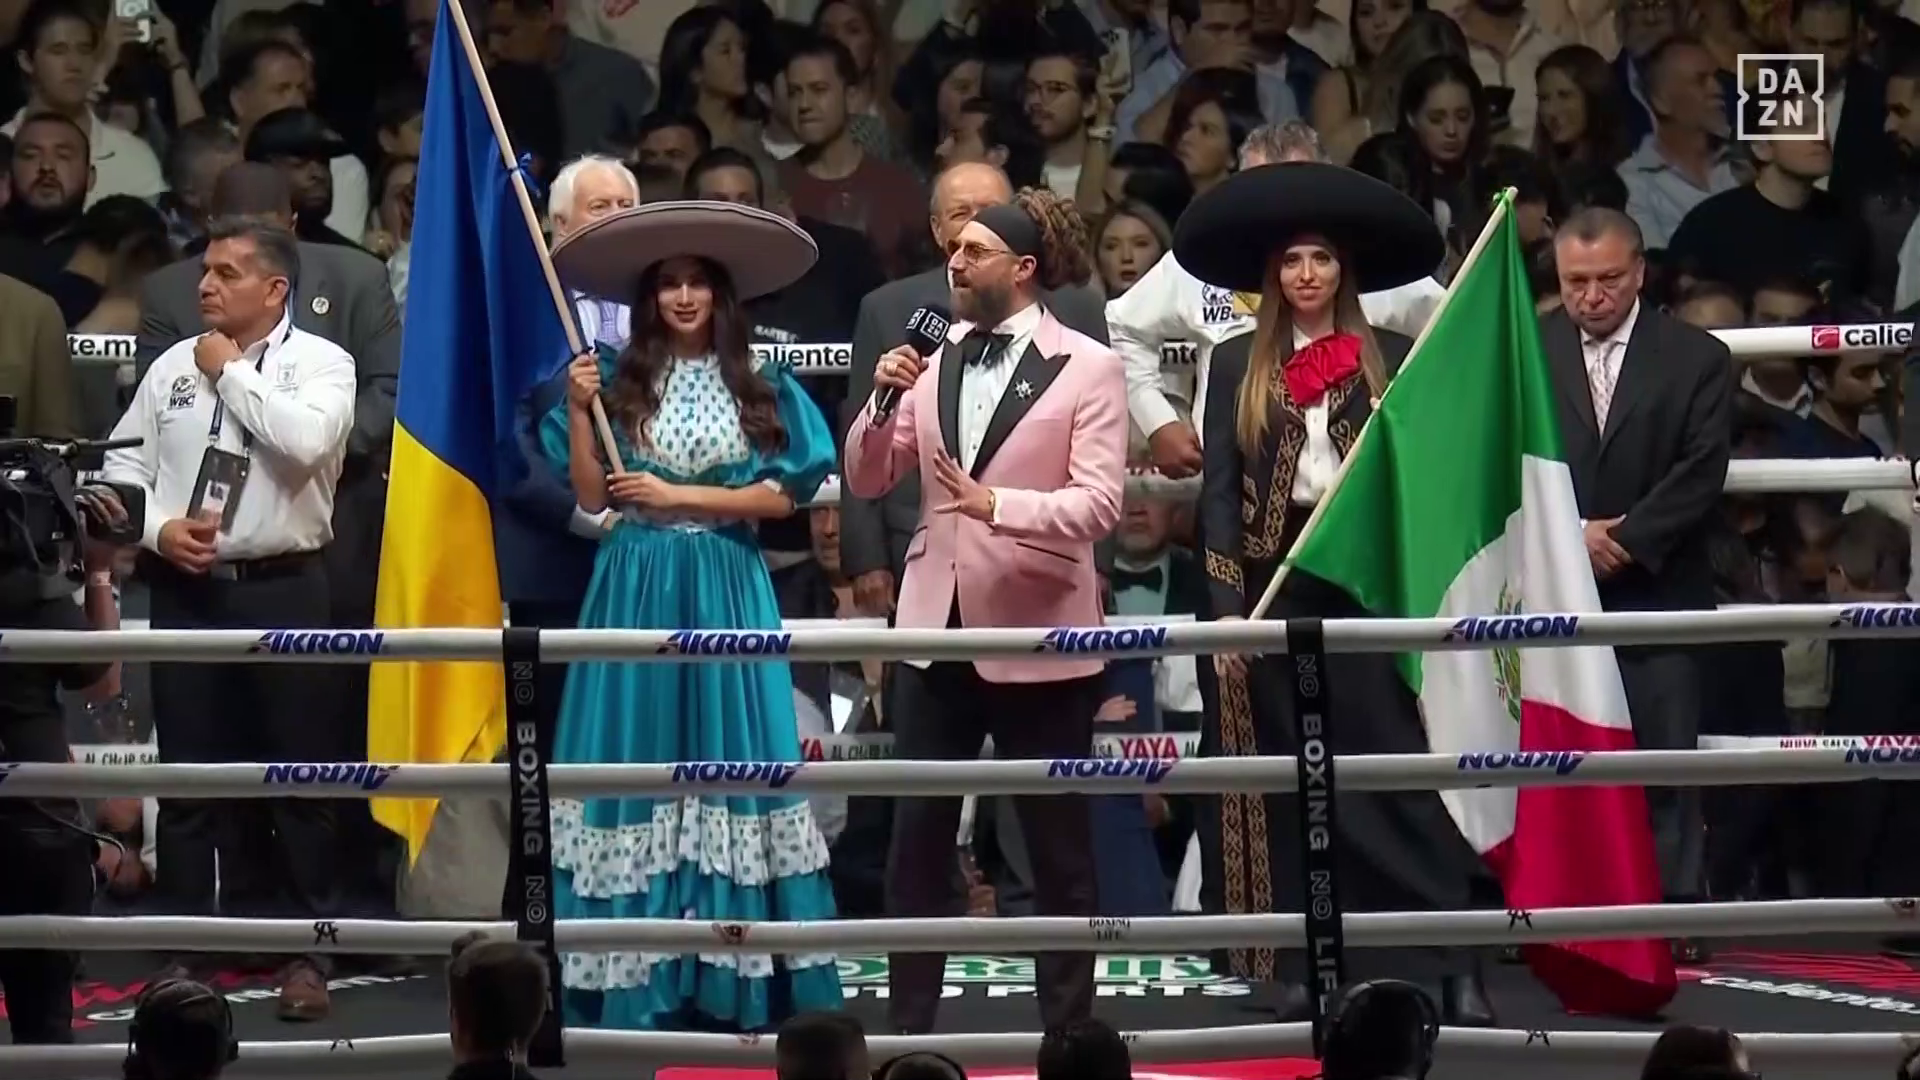 Знаменитый мексиканский боксер вышел на бой под желто-синим флагом. Но есть нюанс